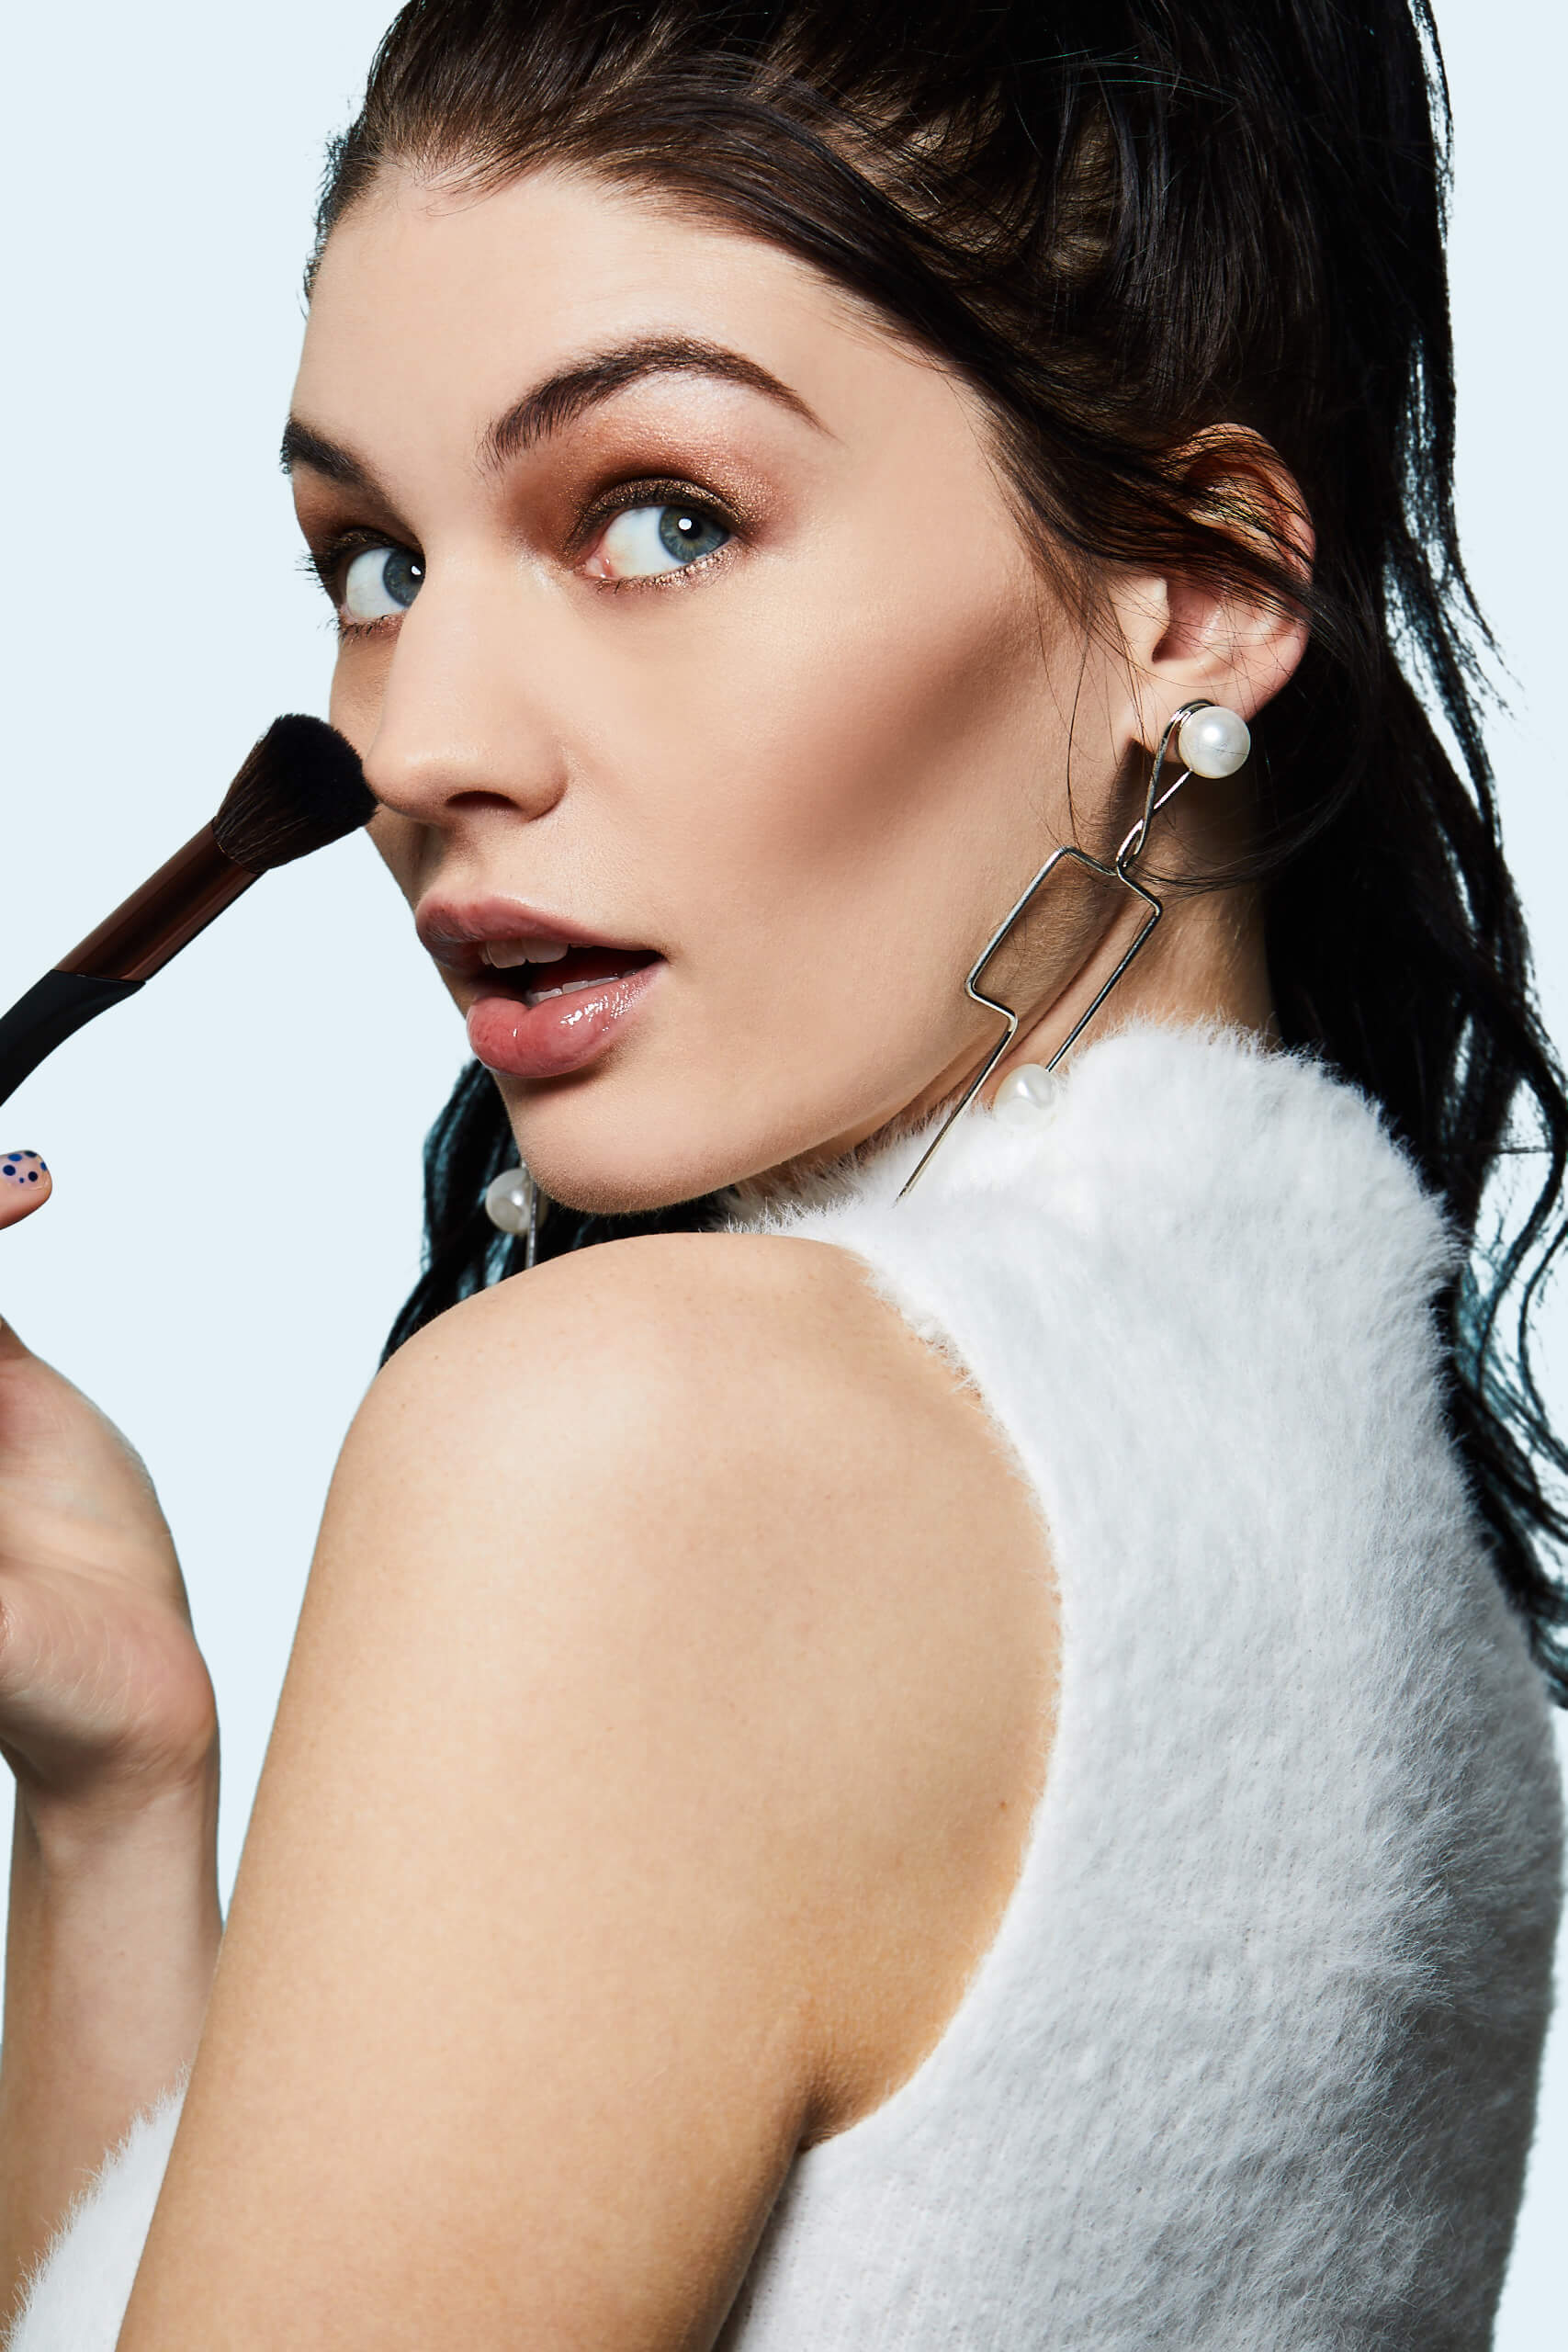 Makeup Artist Amanda Bell for Pixi Beauty